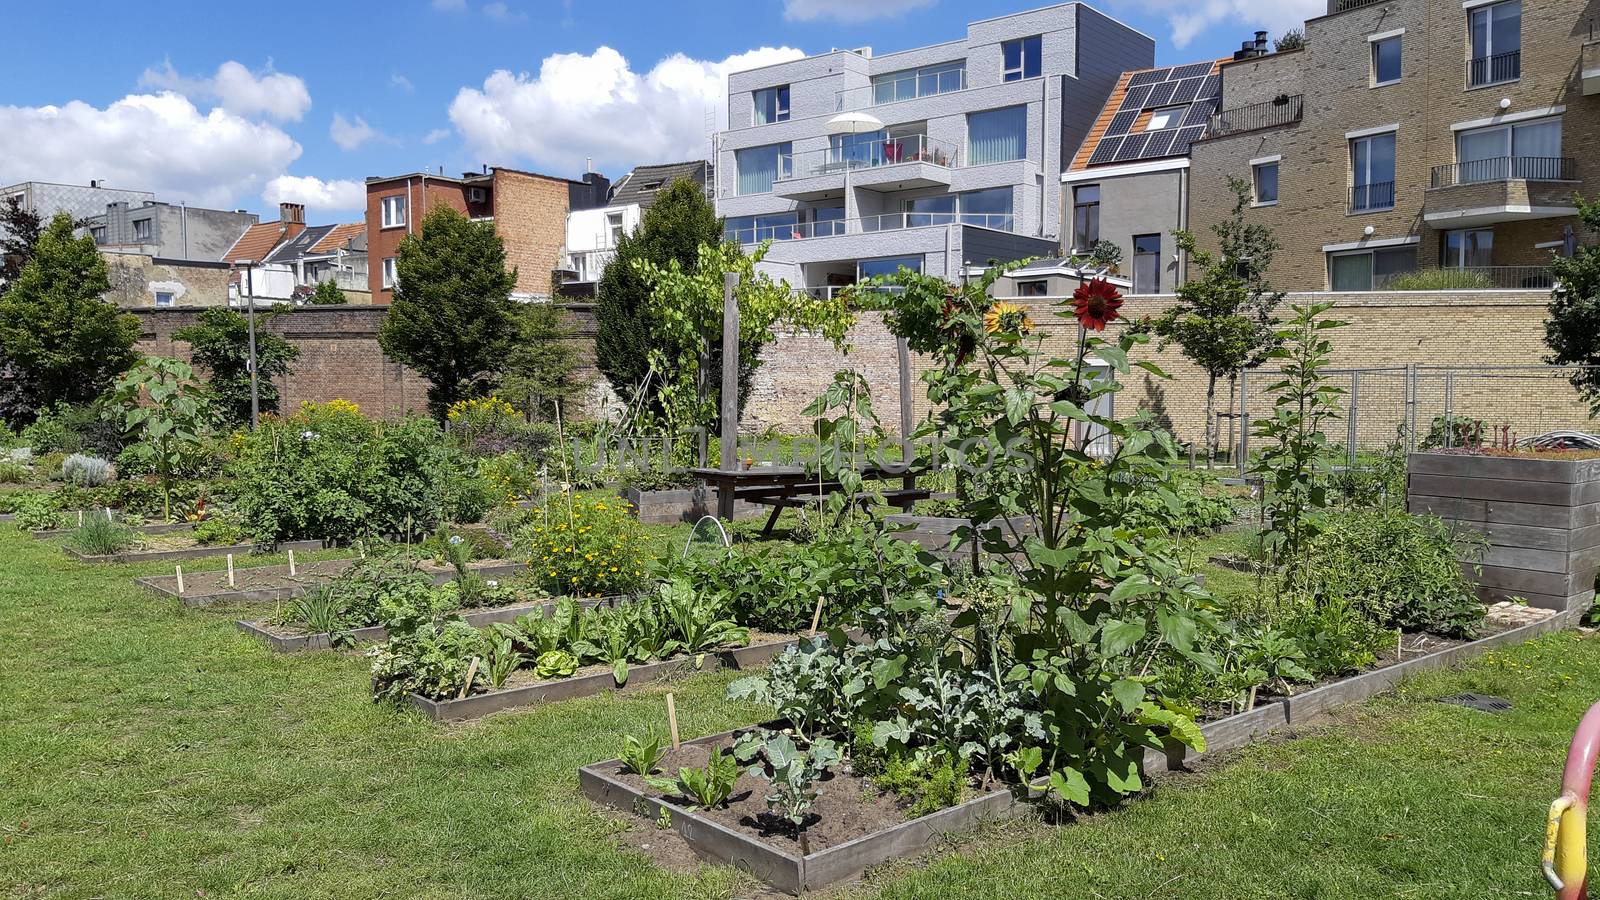 city garden or allotment community garden in the Groen Kwartier district in Antwerp, Belgium by kb79